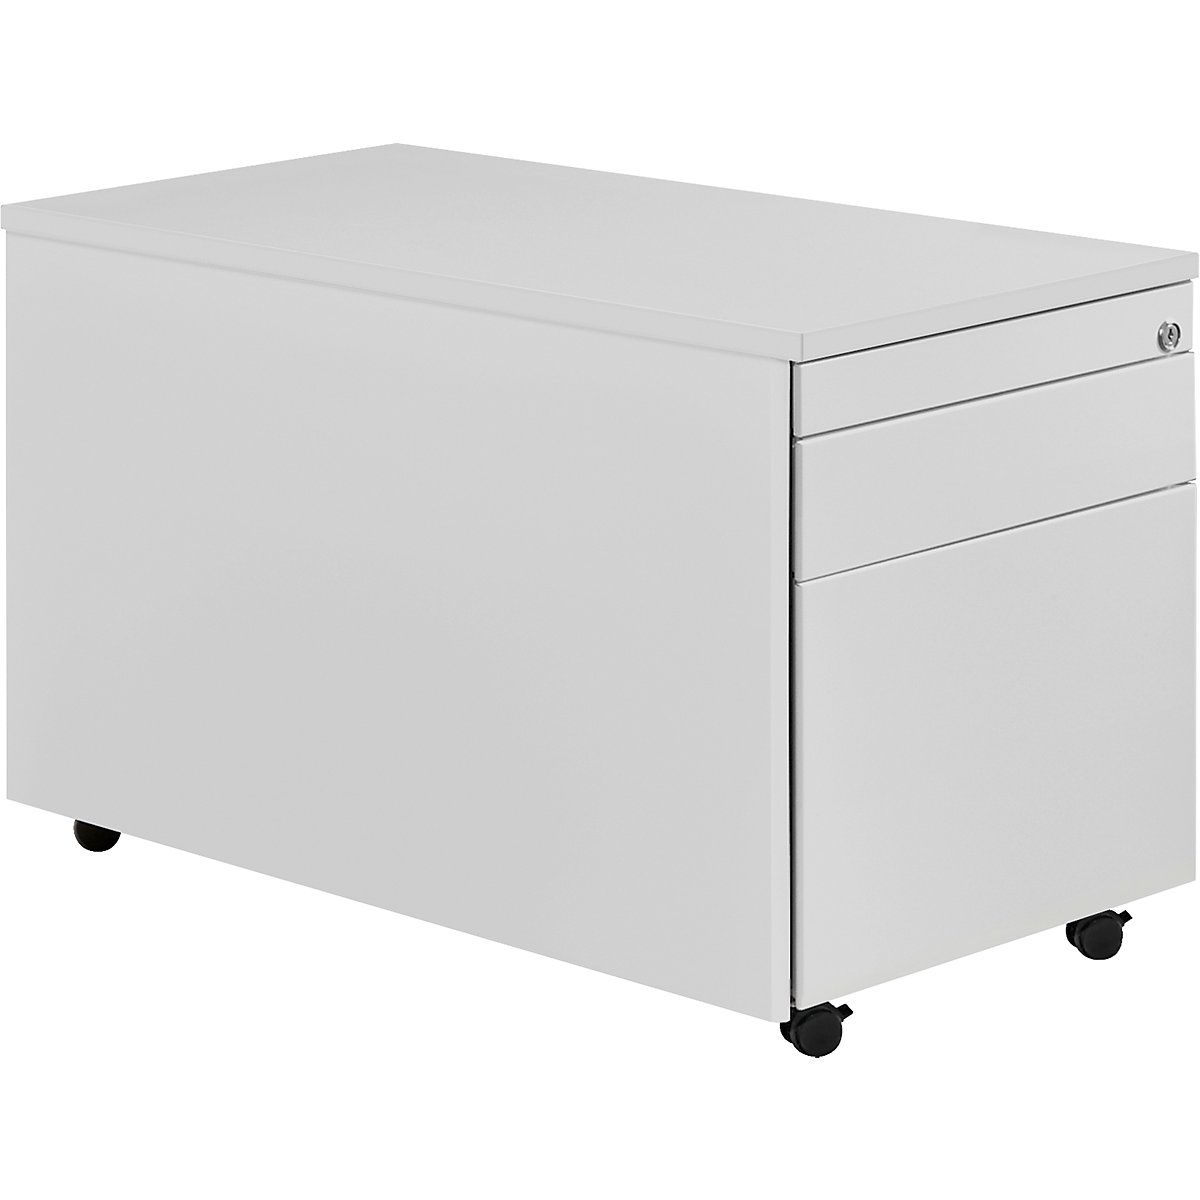 Drawer pedestal with castors – mauser, HxD 529 x 800 mm, 1 drawer, 1 suspension file drawer, light grey / light grey / light grey-4